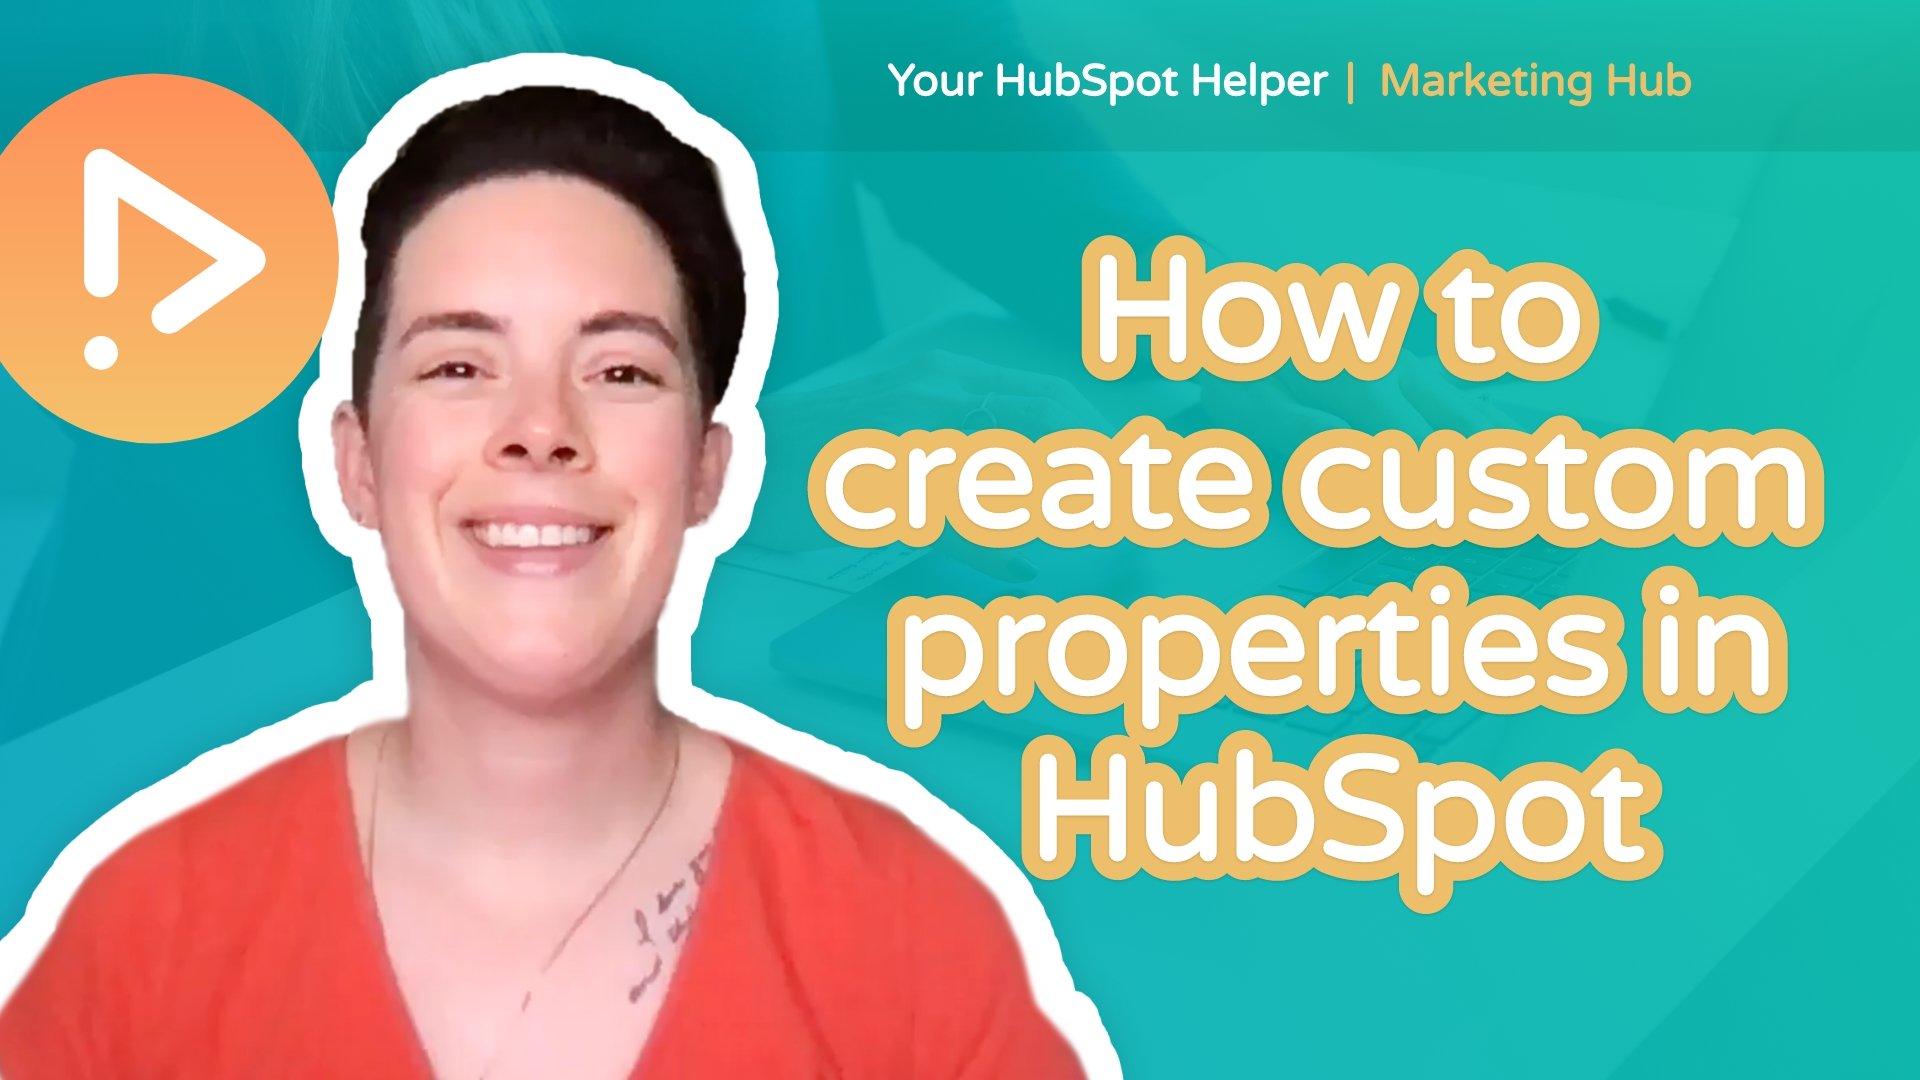 How to create custom properties in HubSpot